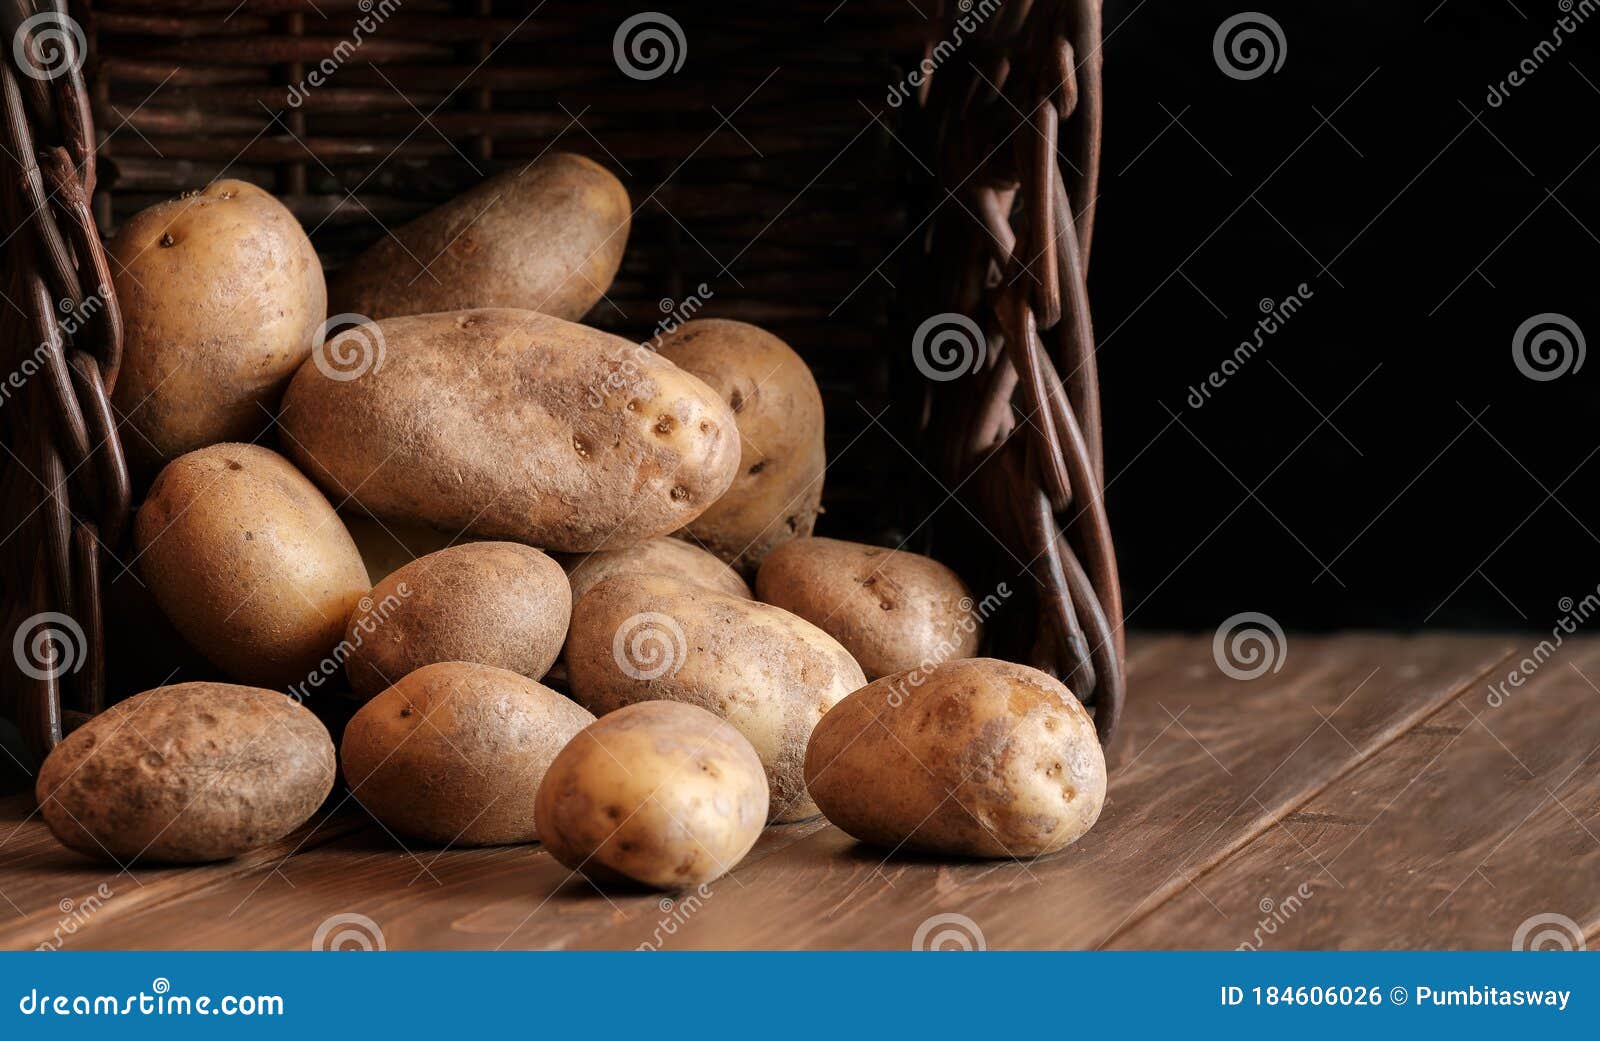 大蒜土豆甜点 库存图片. 图片 包括有 感恩, 健康, 工厂, 产物, 凸起的, 新鲜, 淀粉, 碳水化合物 - 12741039